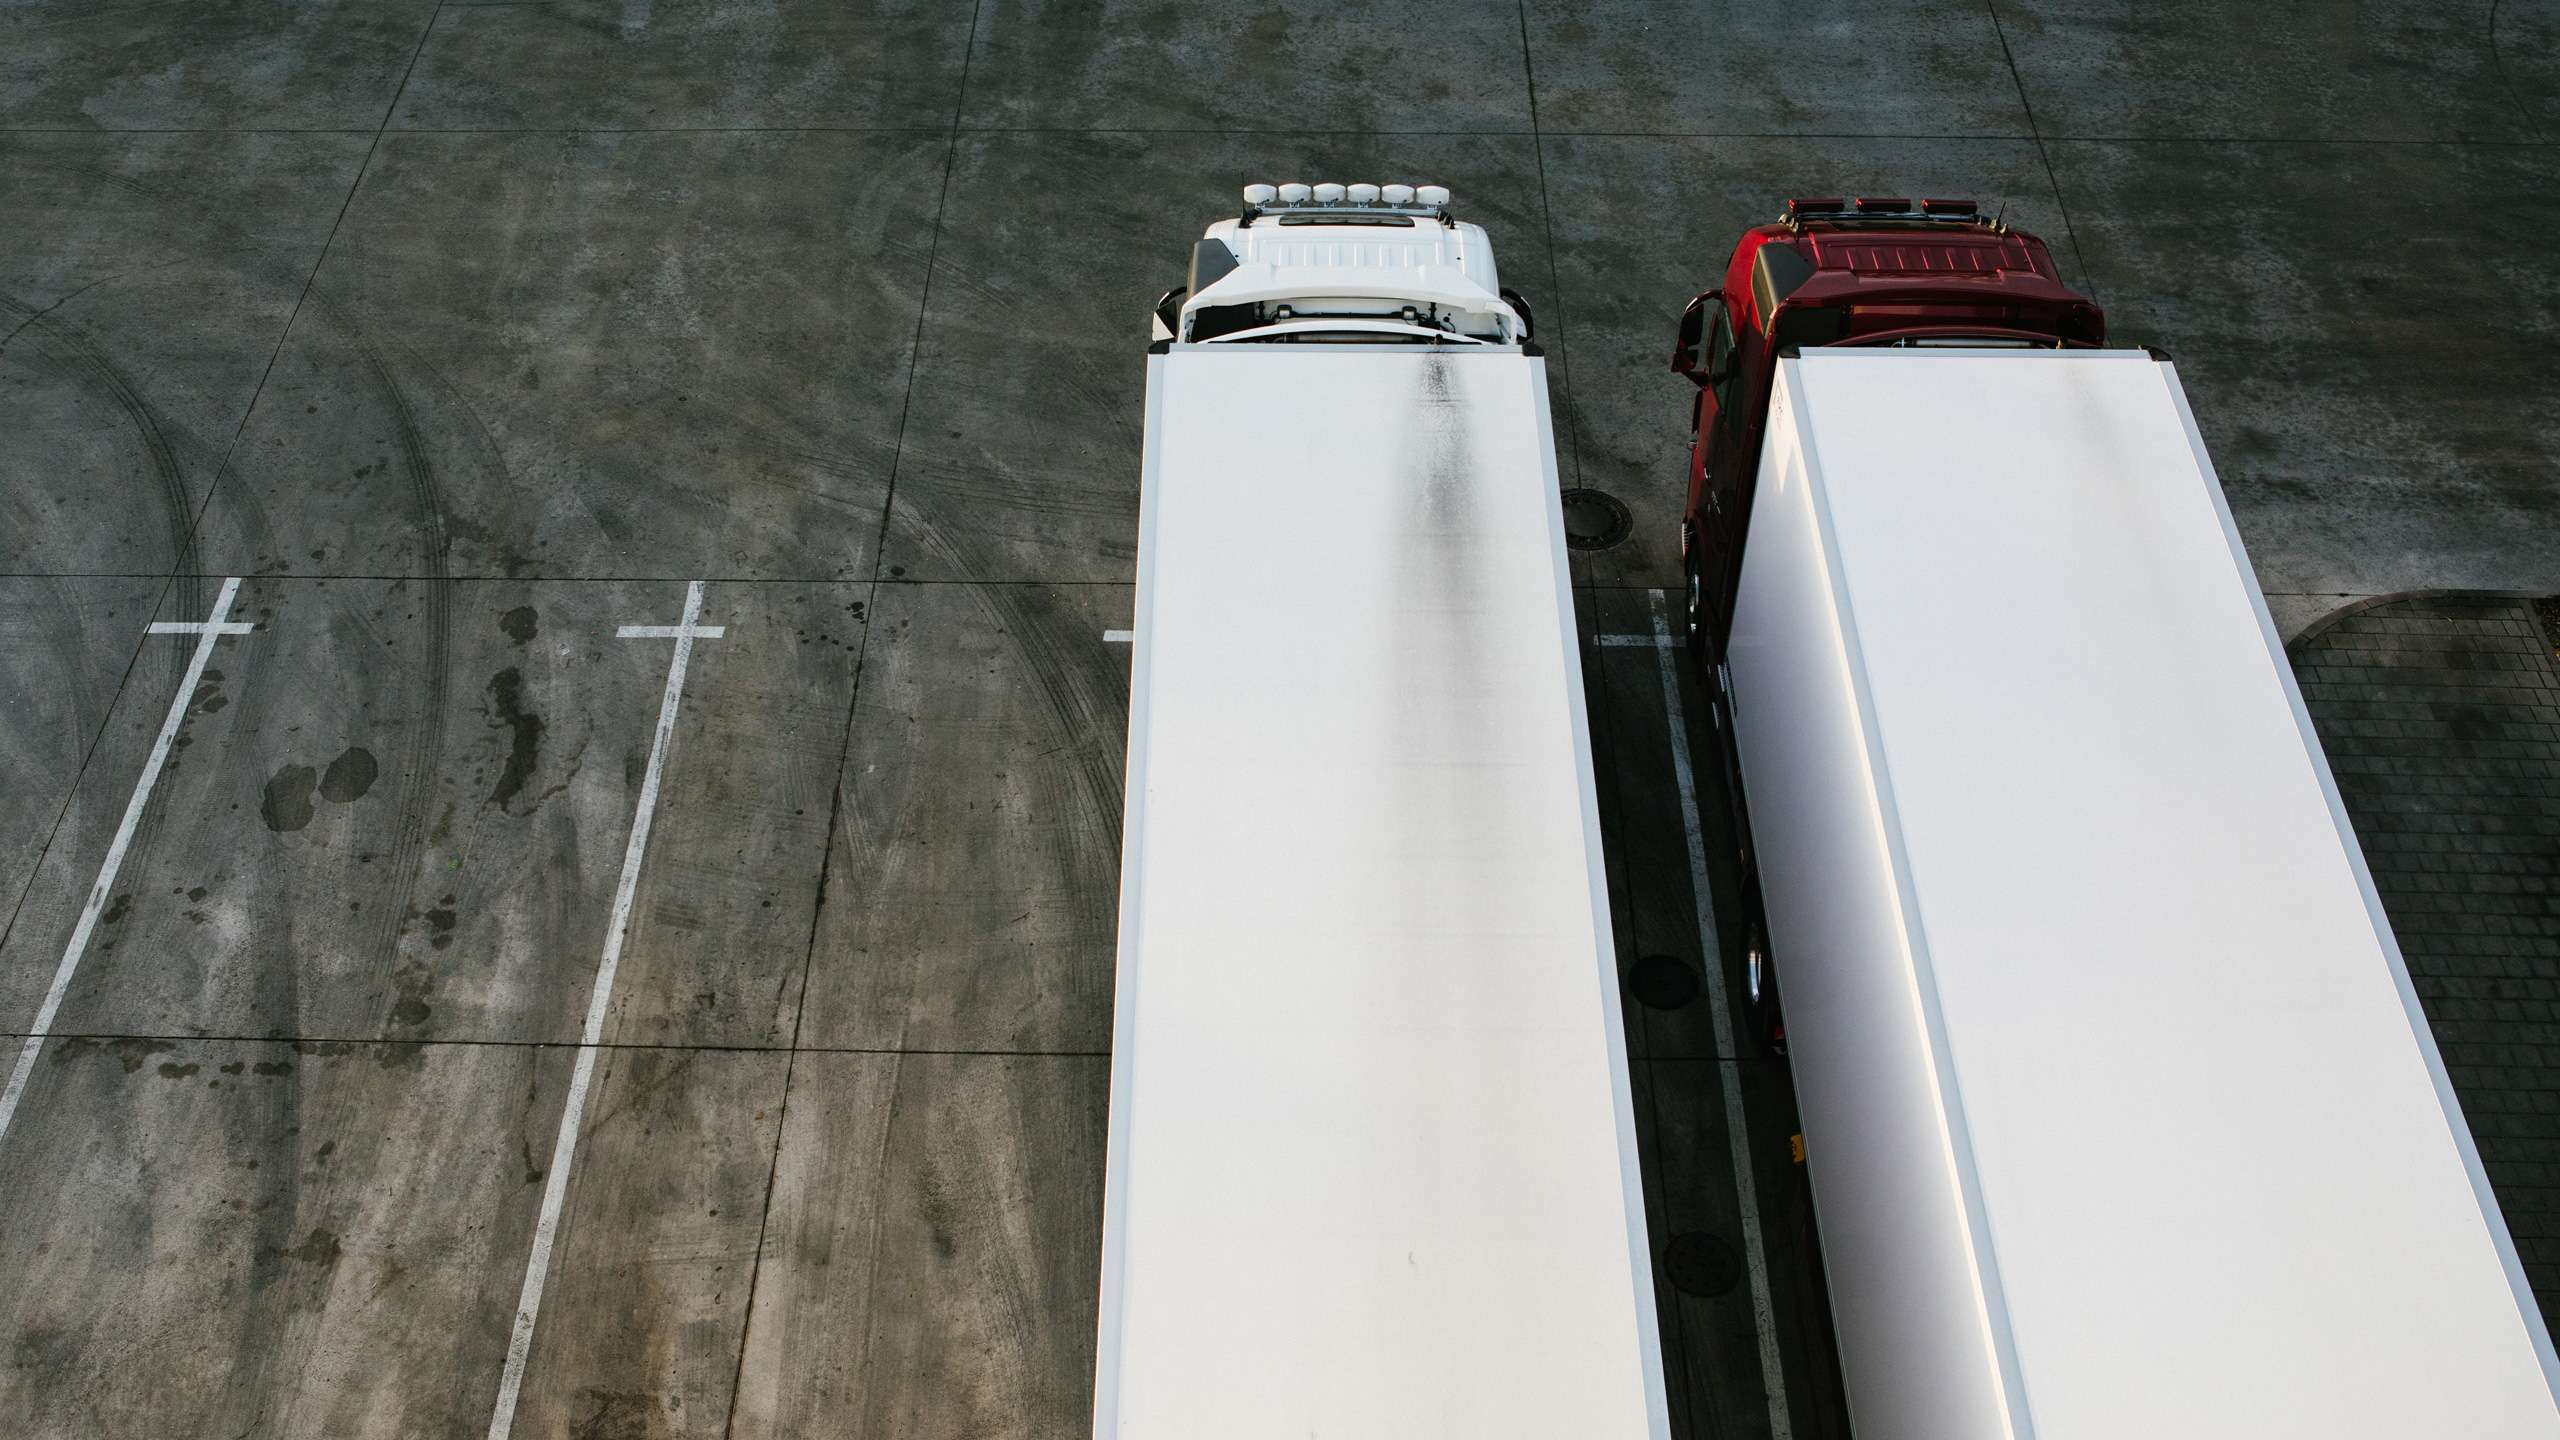 Due camion si trovano uno accanto all'altro in un parcheggio, visti dall'alto. Quello a sinistra è completamente bianco, quello a destra ha una cabina rossa lucida.